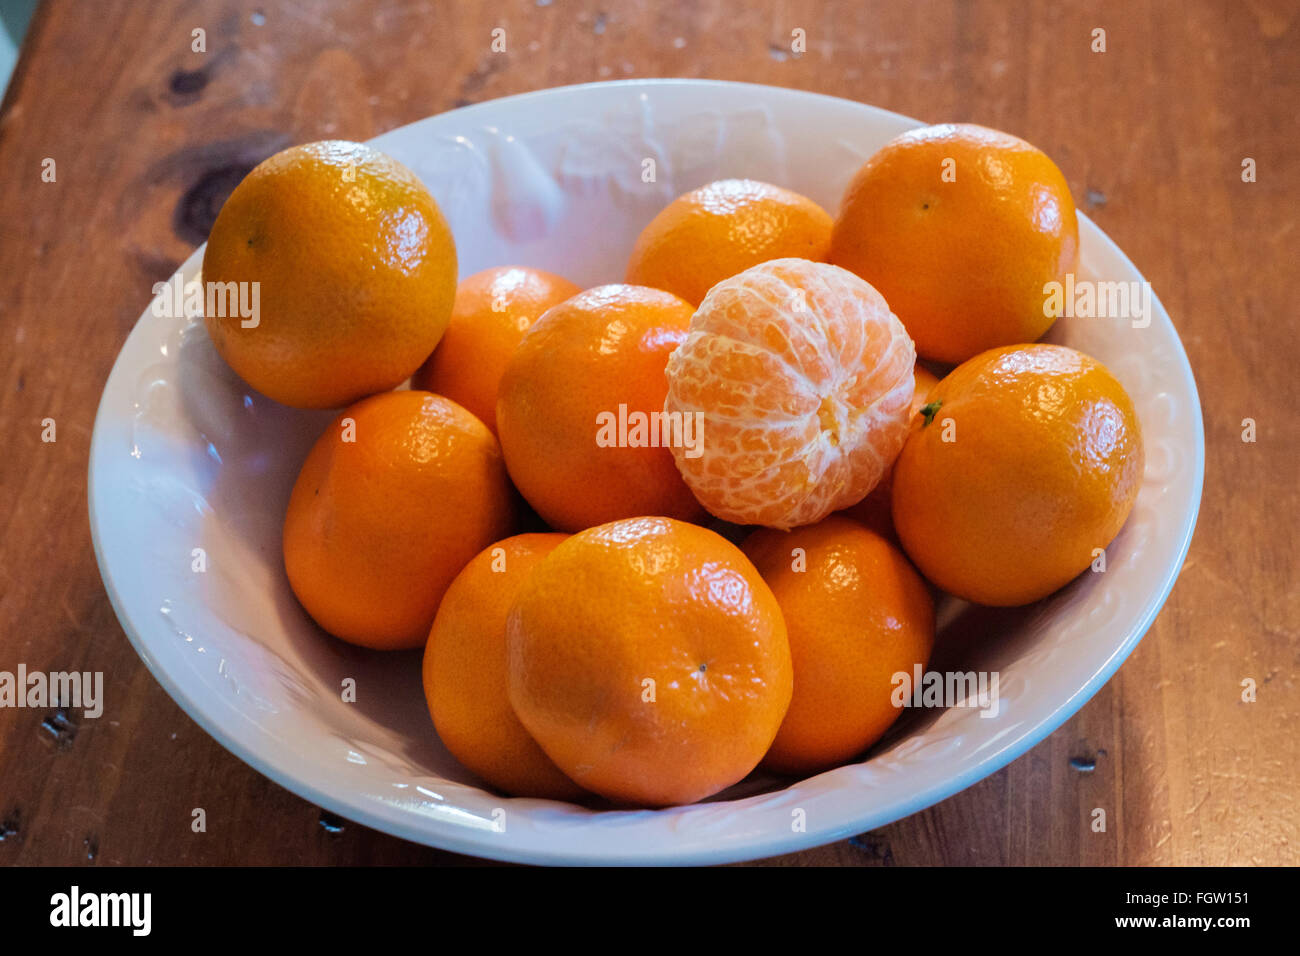 Mandarin oranges, Citrus reticulata, in a white bowl. Stock Photo